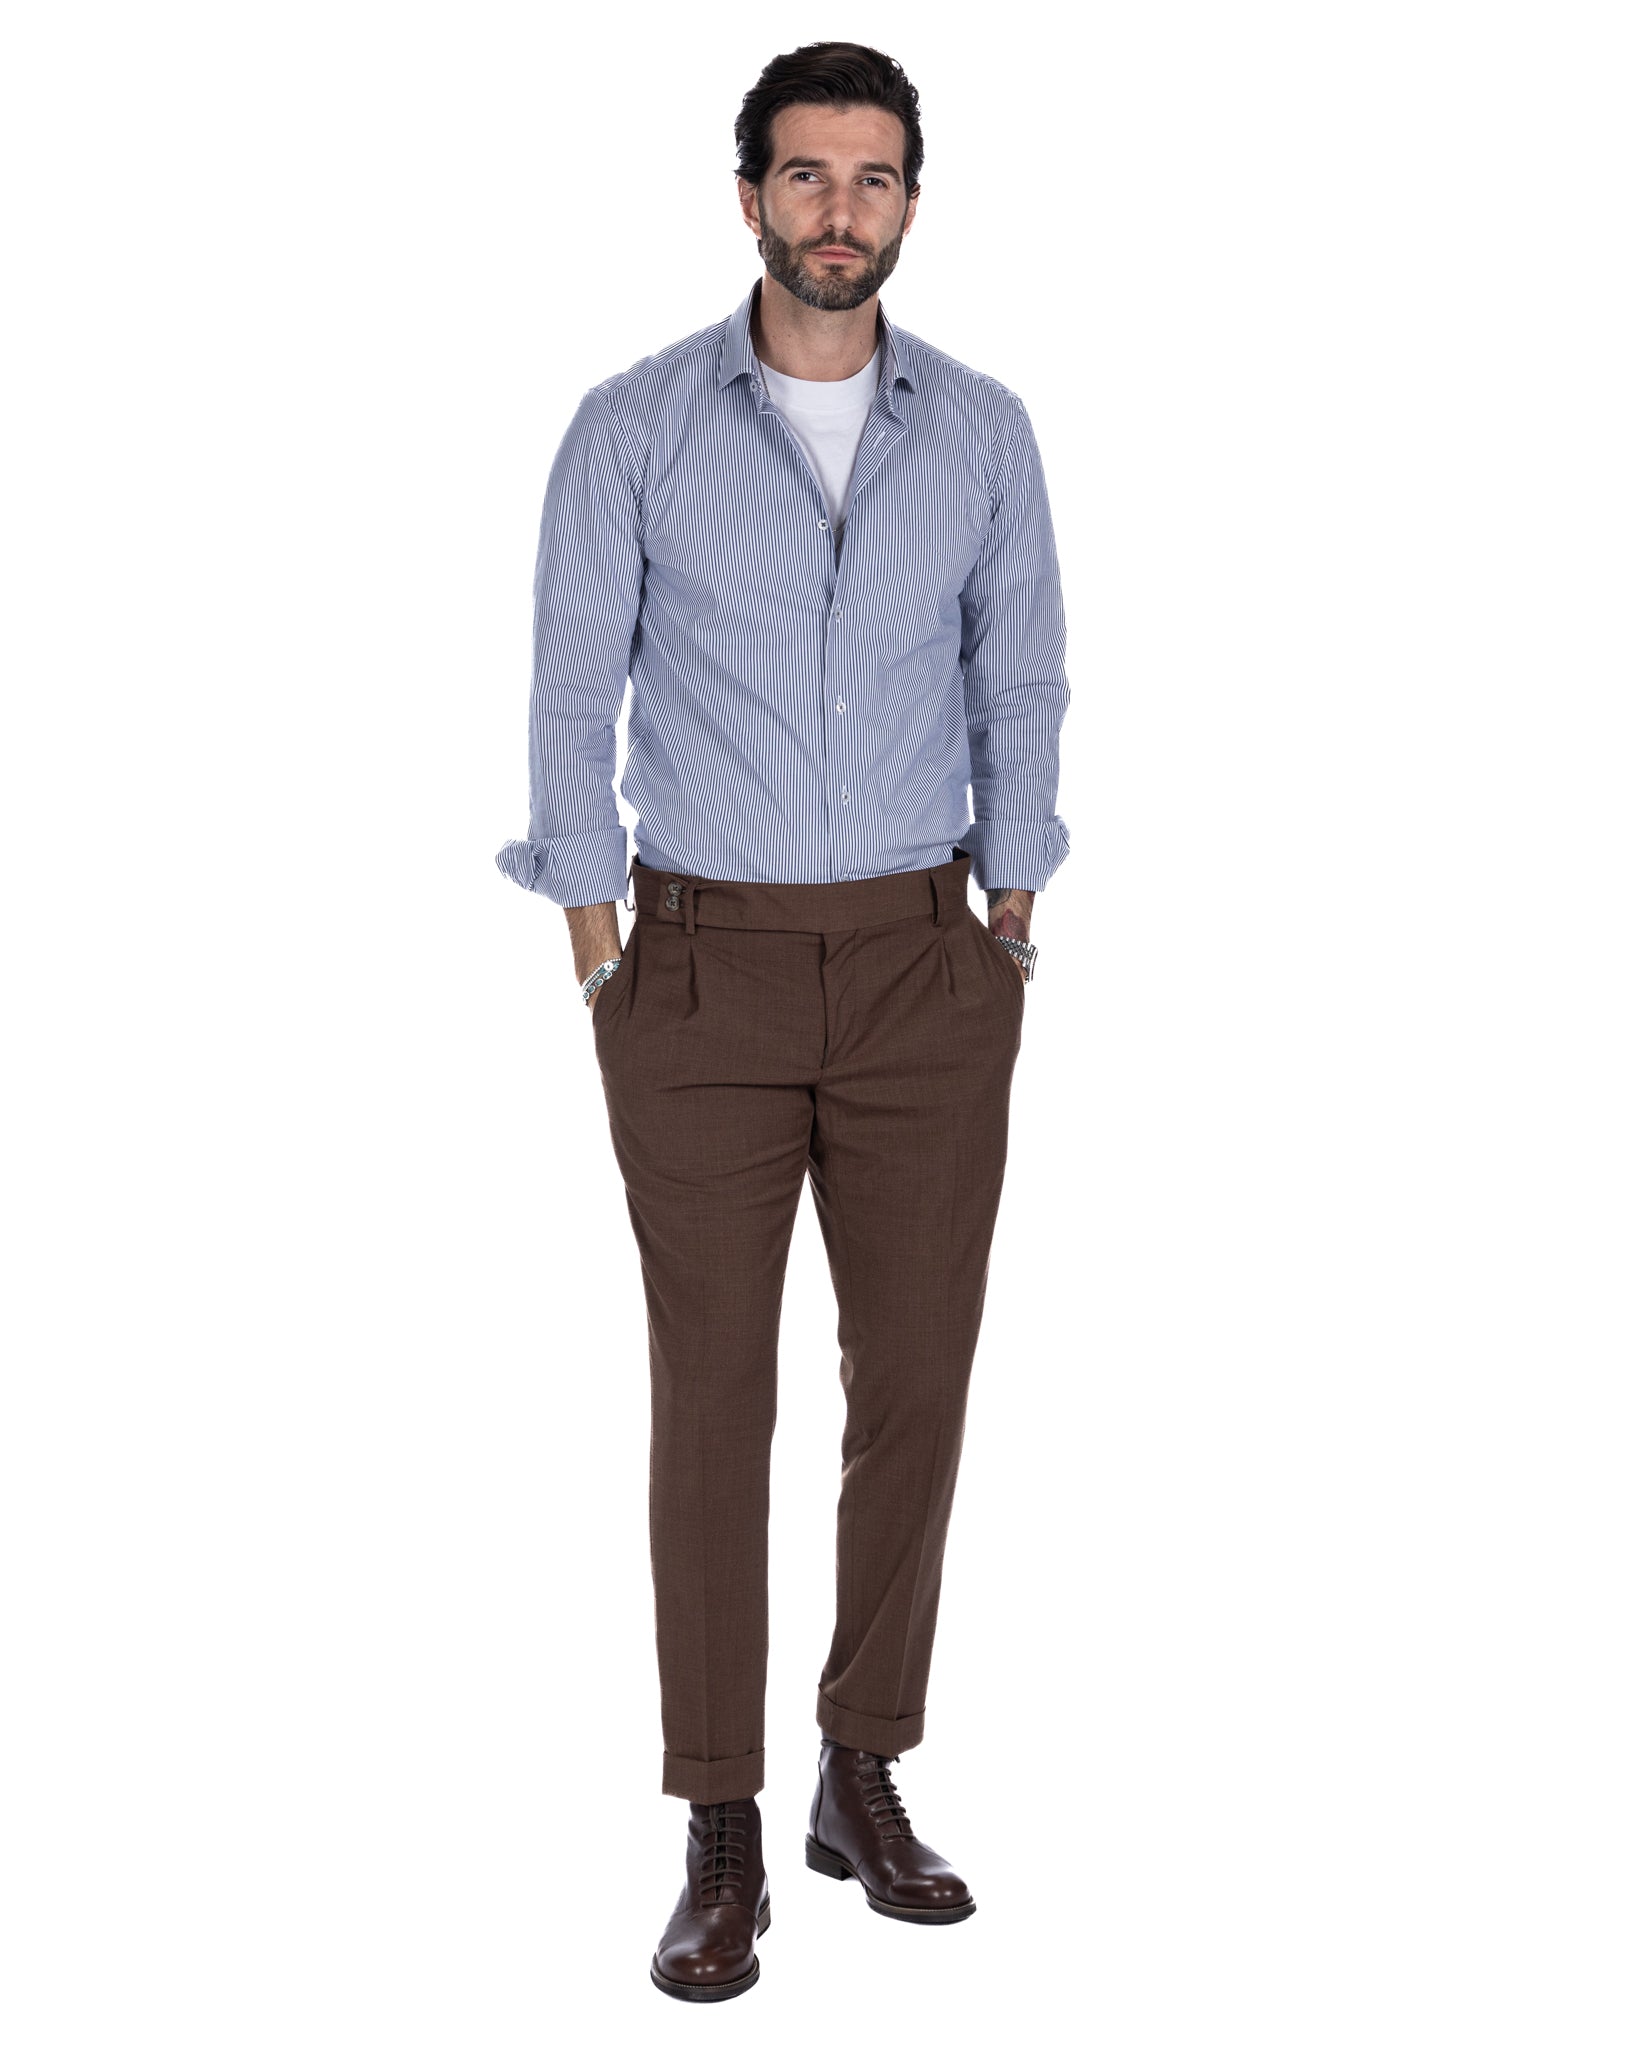 Pantalon italien taille haute marron foncé en laine mélangée